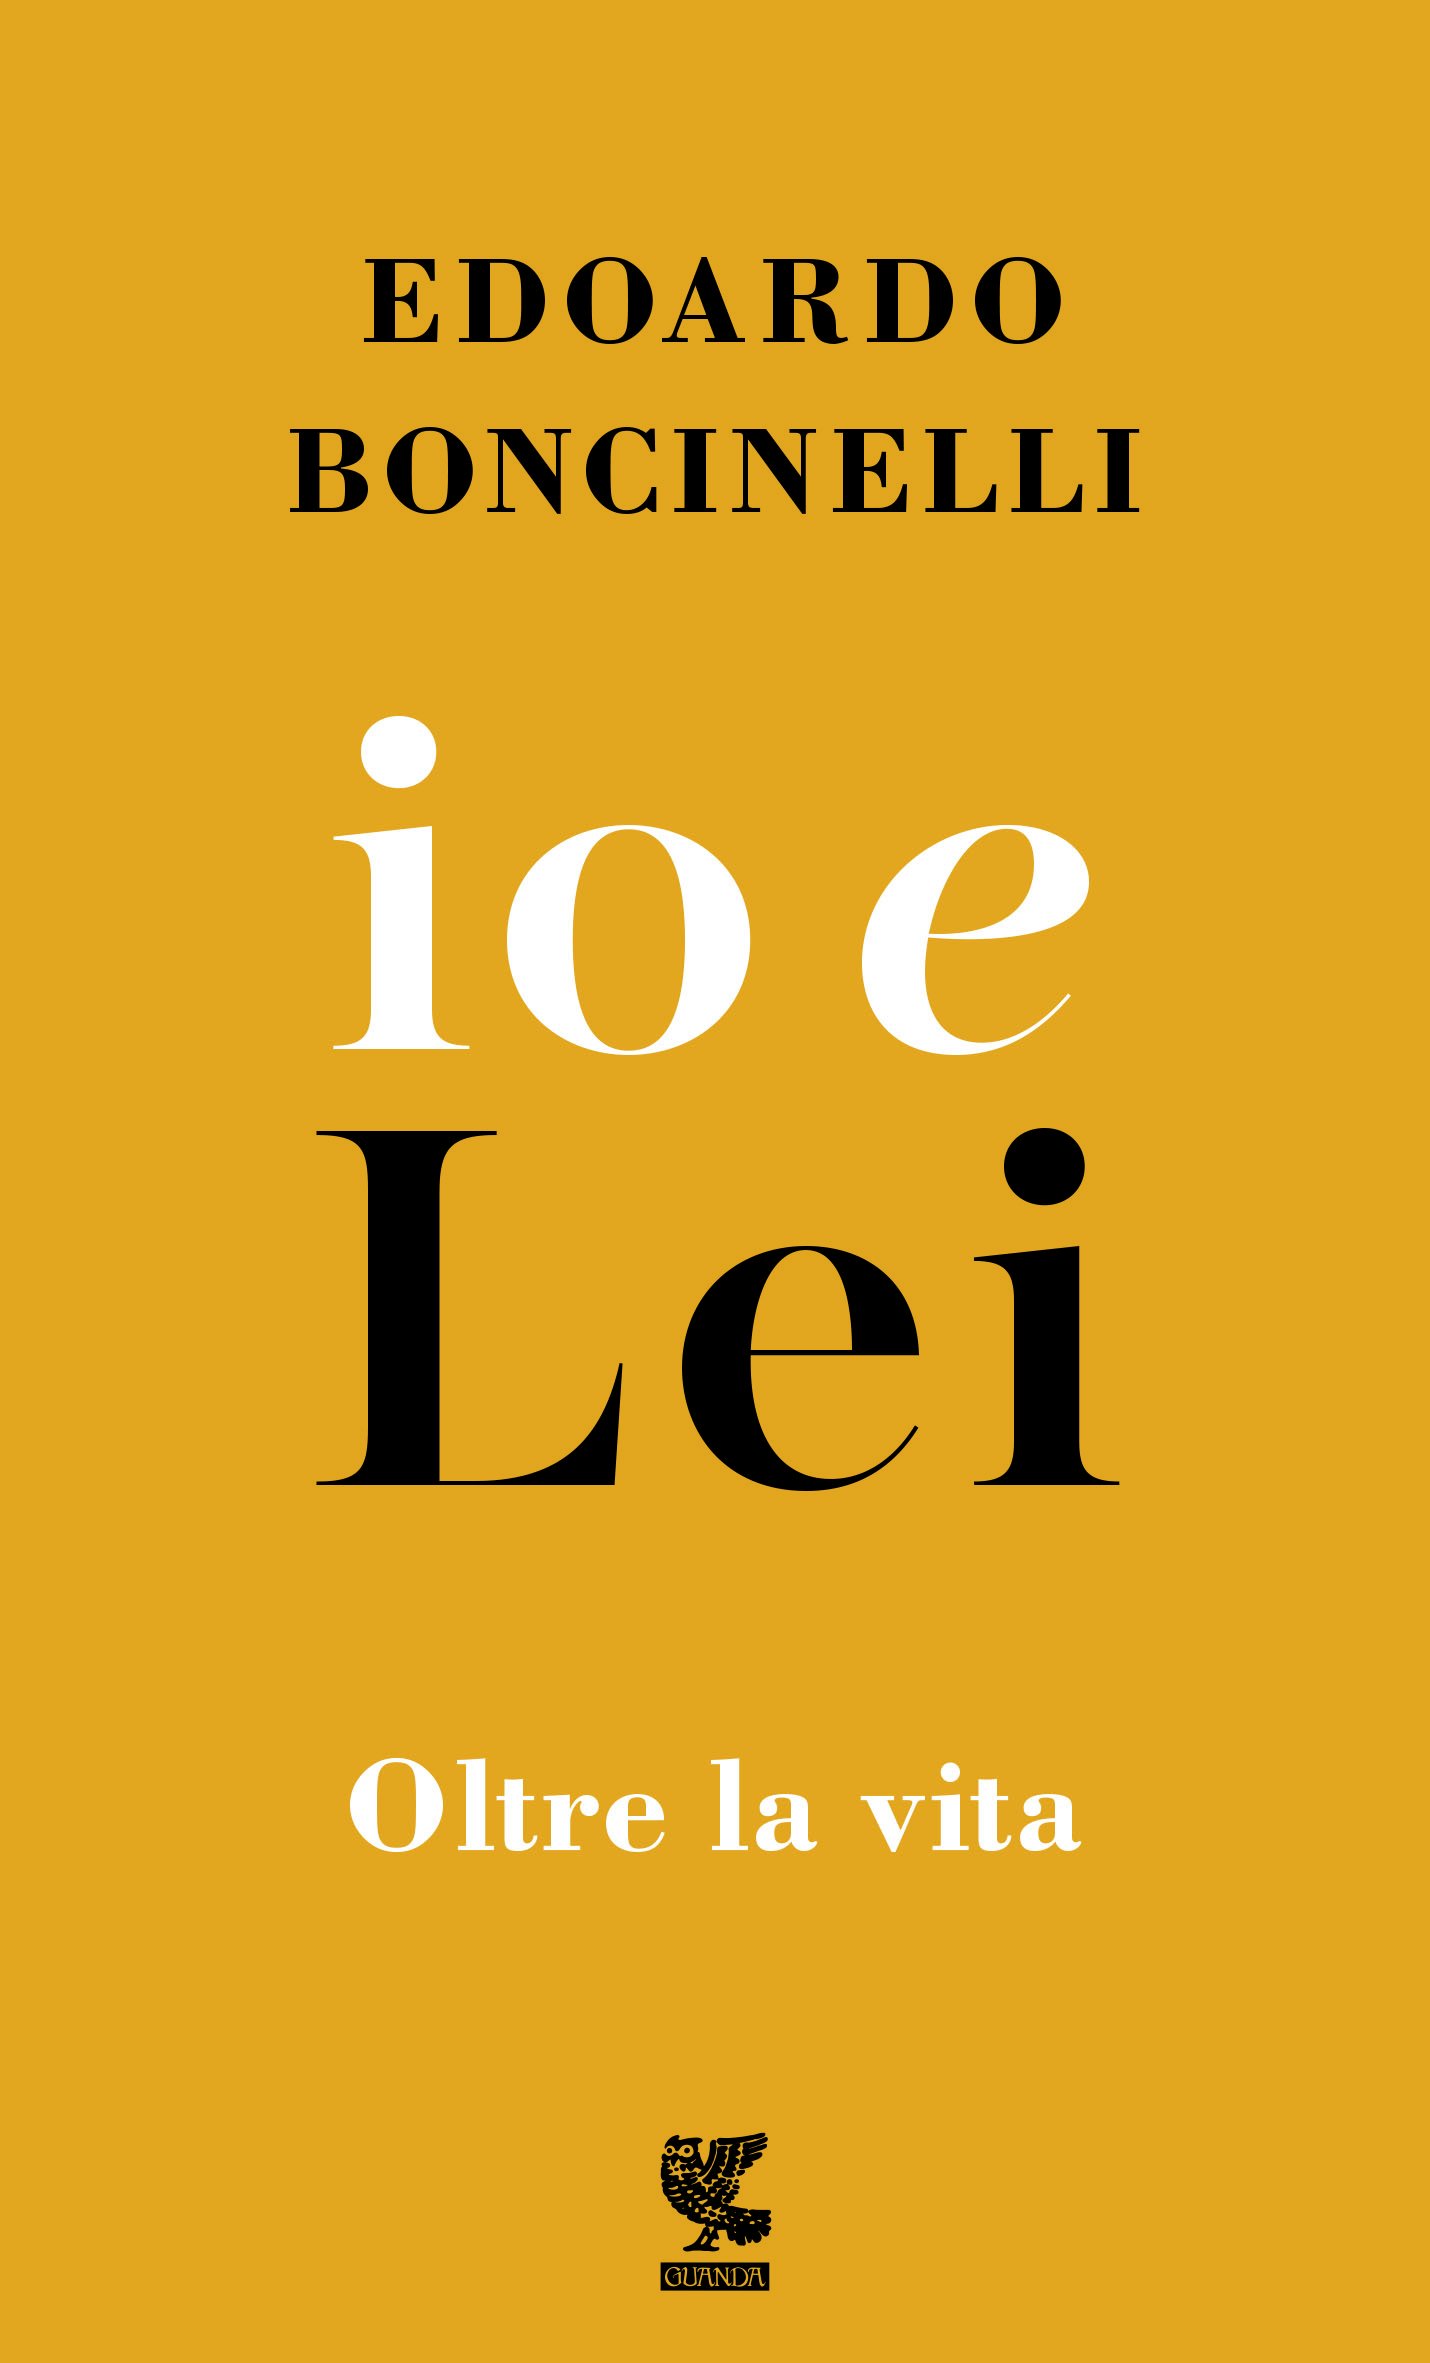 Boncinelli E. (2017). Io e lei. Guanda